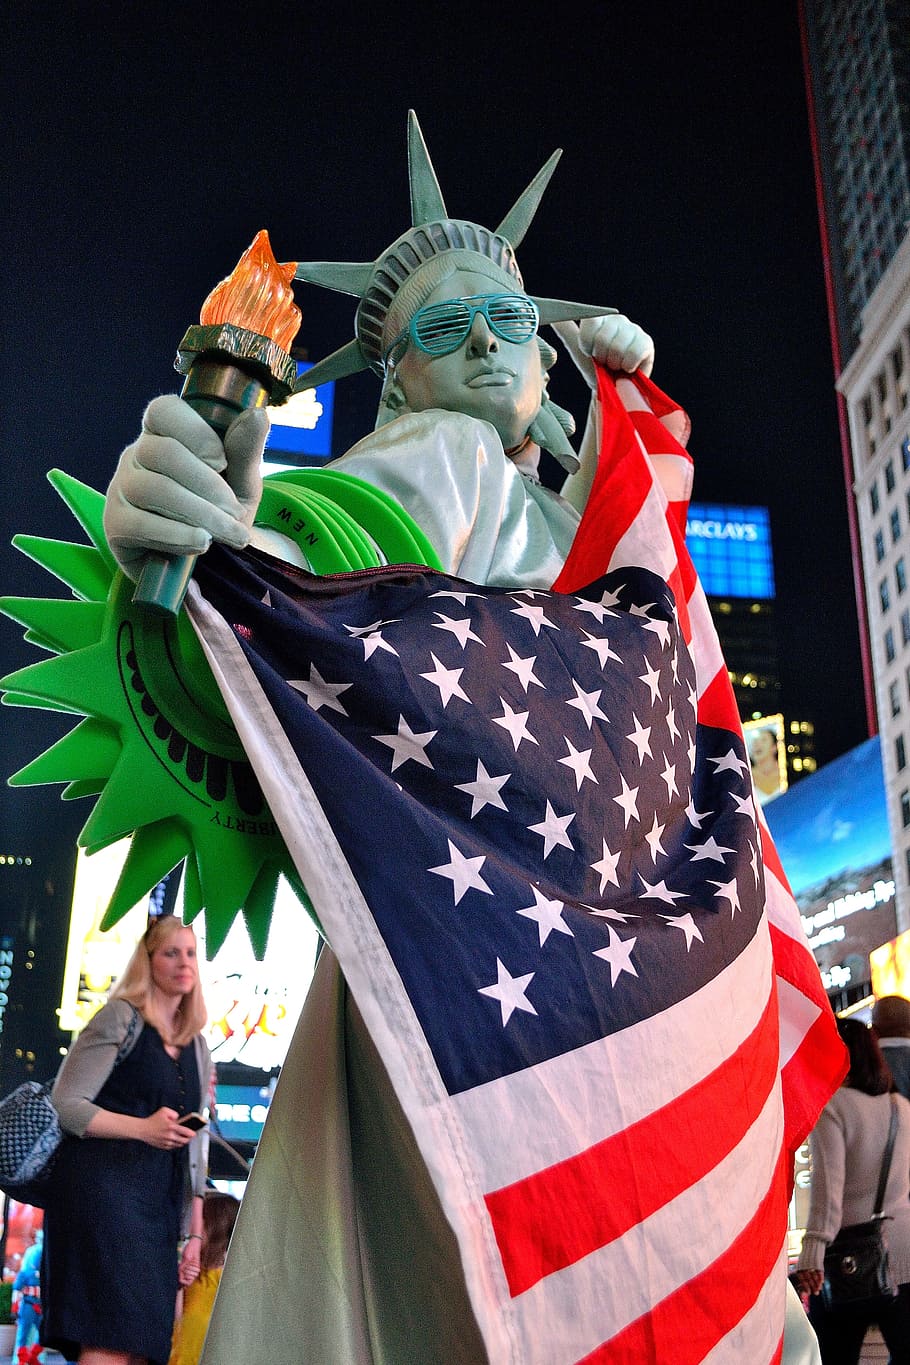 タイムズスクエア, コスチューム, メイク, mime, キャラクター, 42番街, アメリカの国旗, 記念碑的, 自由, 7月4日